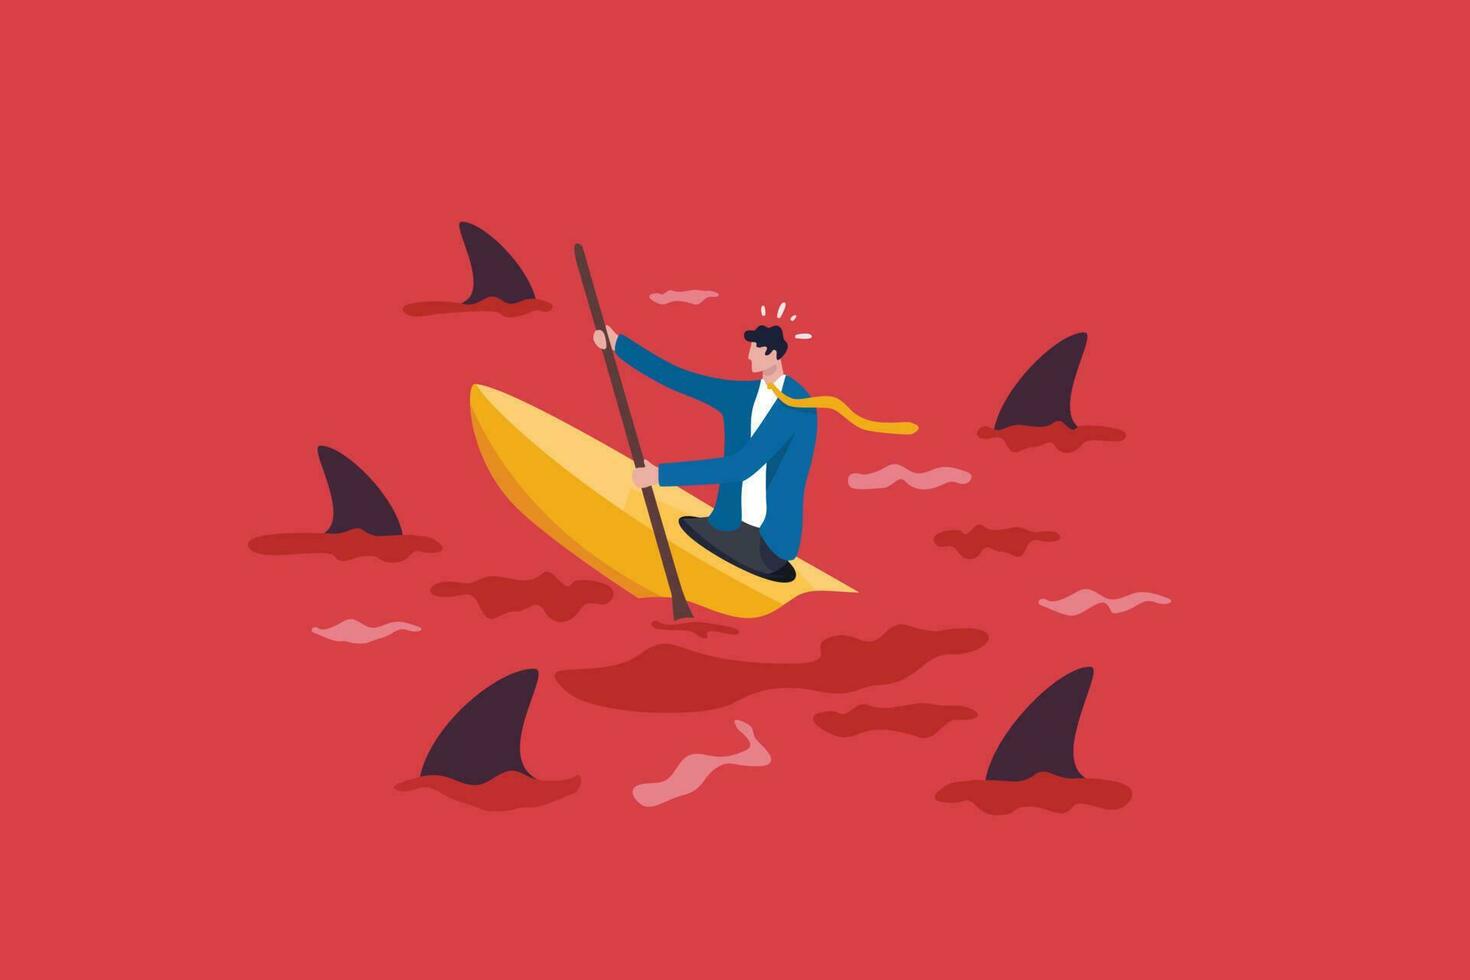 rood oceaan markt, hoog wedstrijd industrie met te veel concurrenten, intens markt met uitdaging of moeilijk naar succes concept, zakenman in kajak proberen naar overleven in rood oceaan met haaien. vector